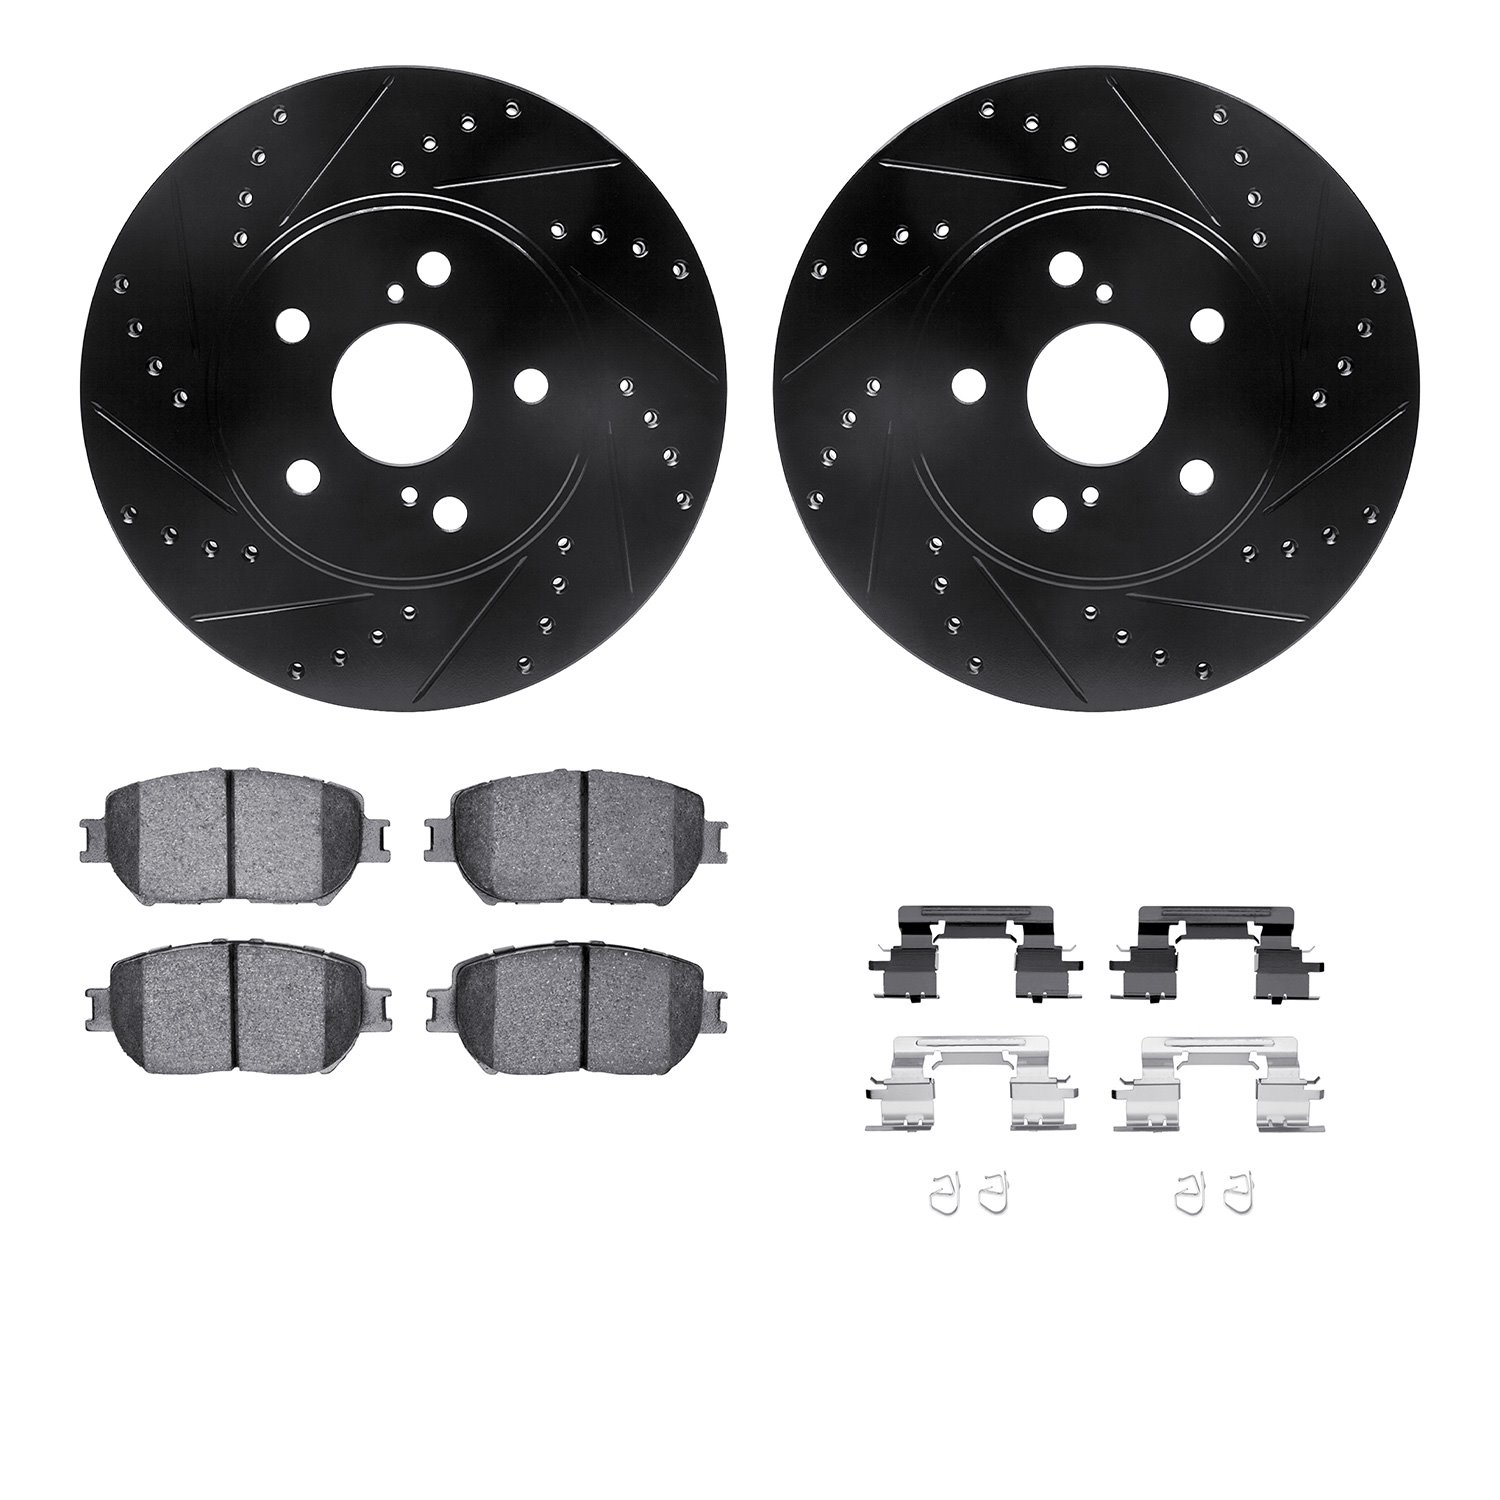 8312-76141 Drilled/Slotted Brake Rotors with 3000-Series Ceramic Brake Pads Kit & Hardware [Black], 2002-2003 Lexus/Toyota/Scion